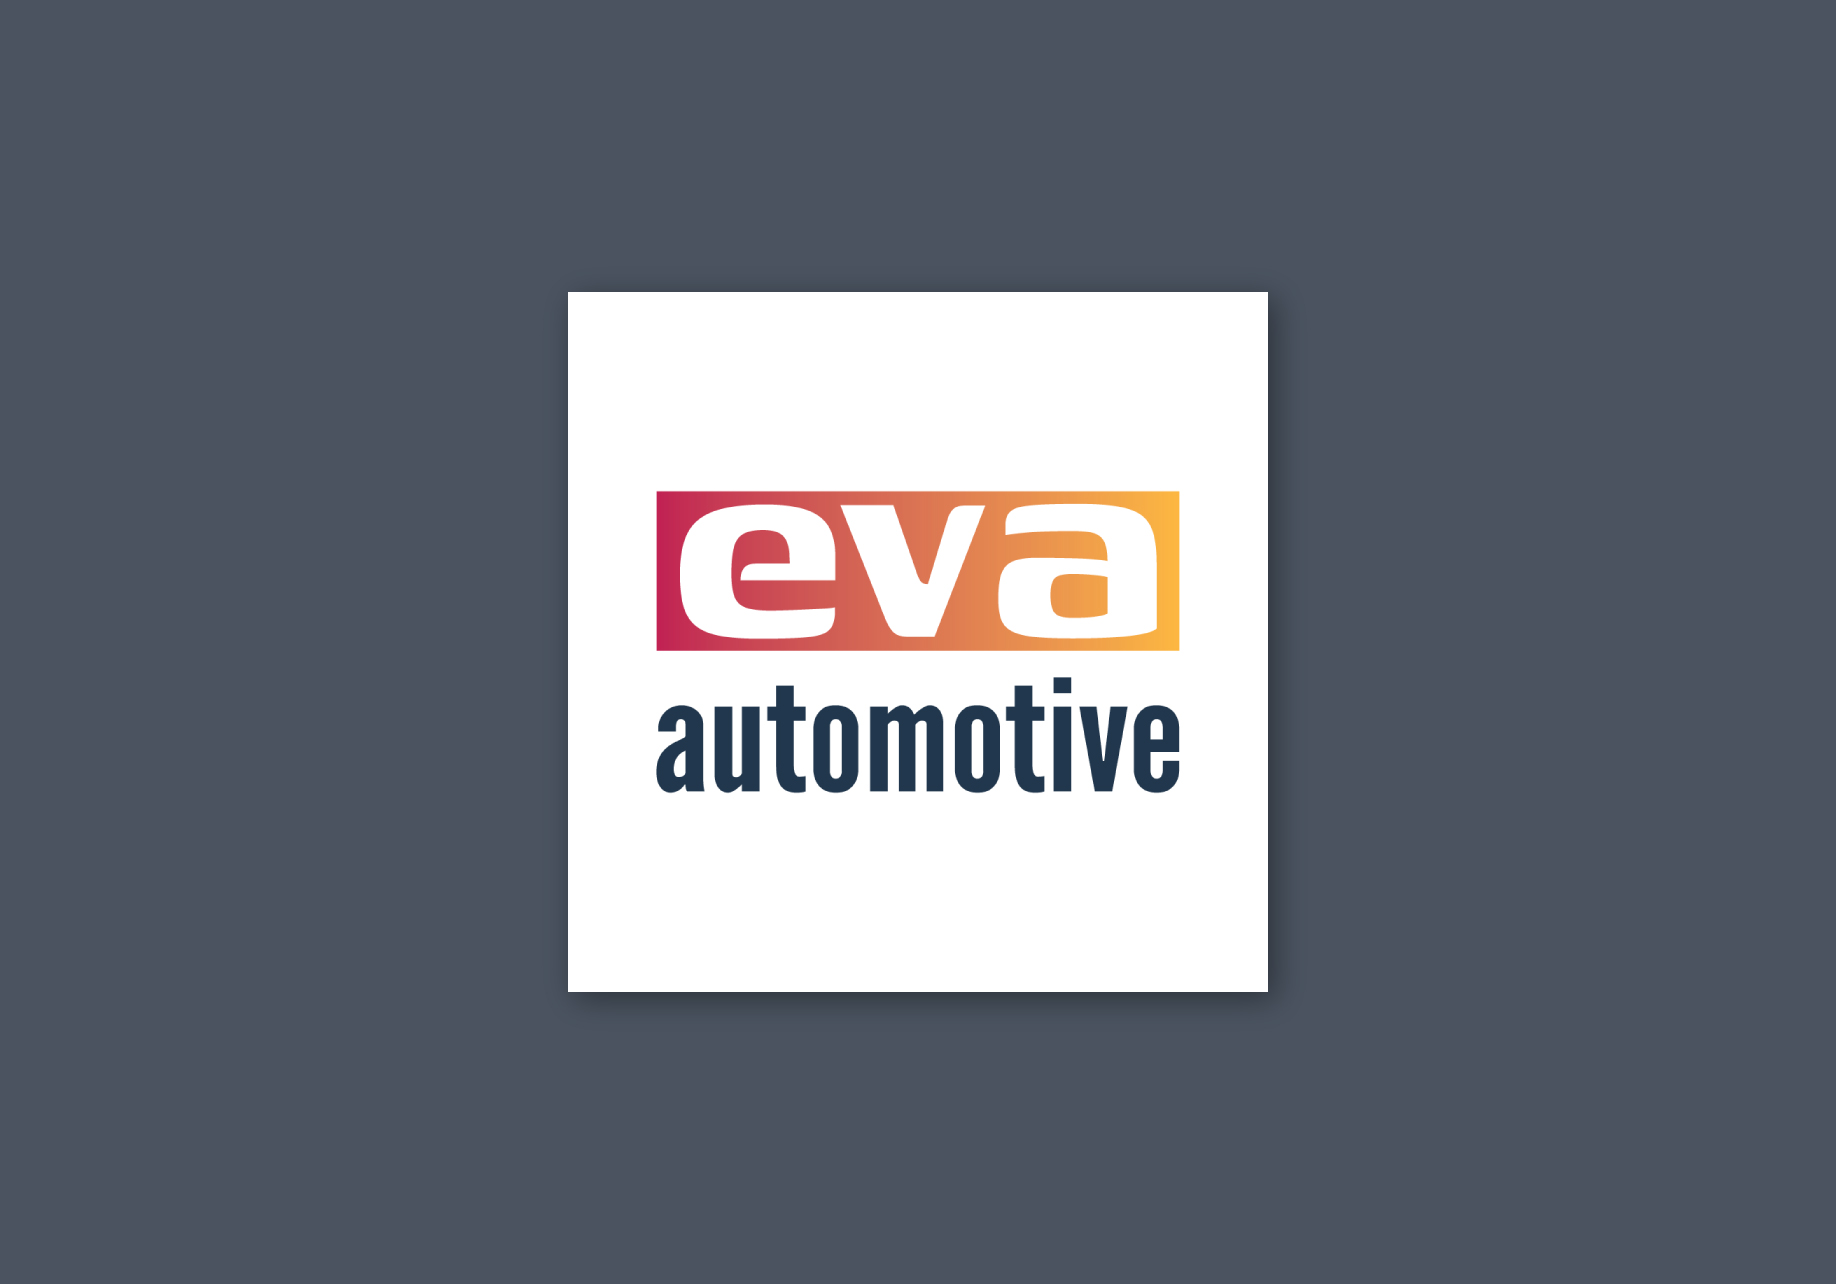 2022-07 Balloo Web Agency – Création de logo Eva Automotive